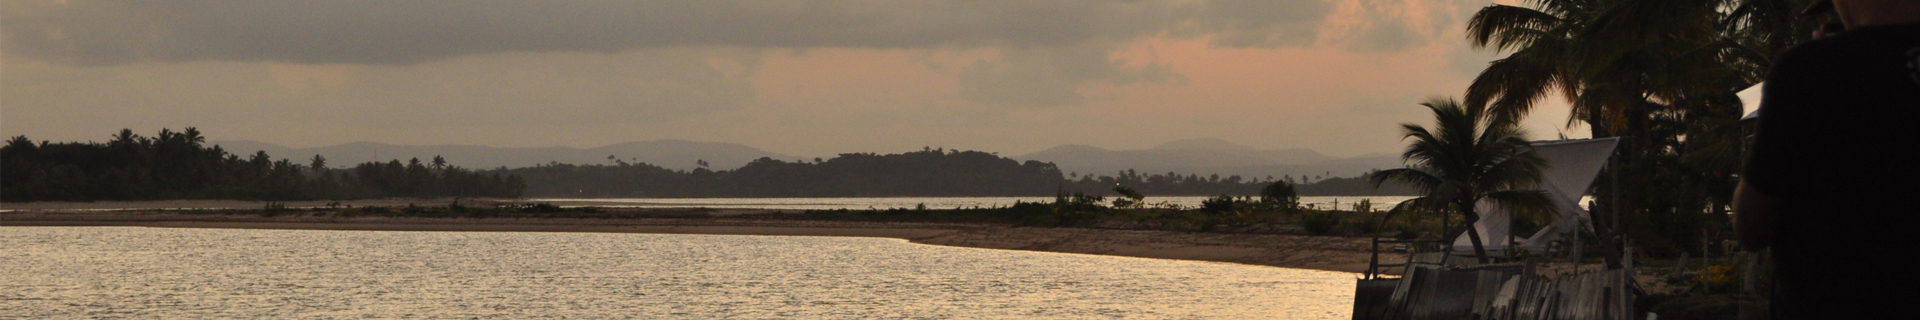 Península de Maraú